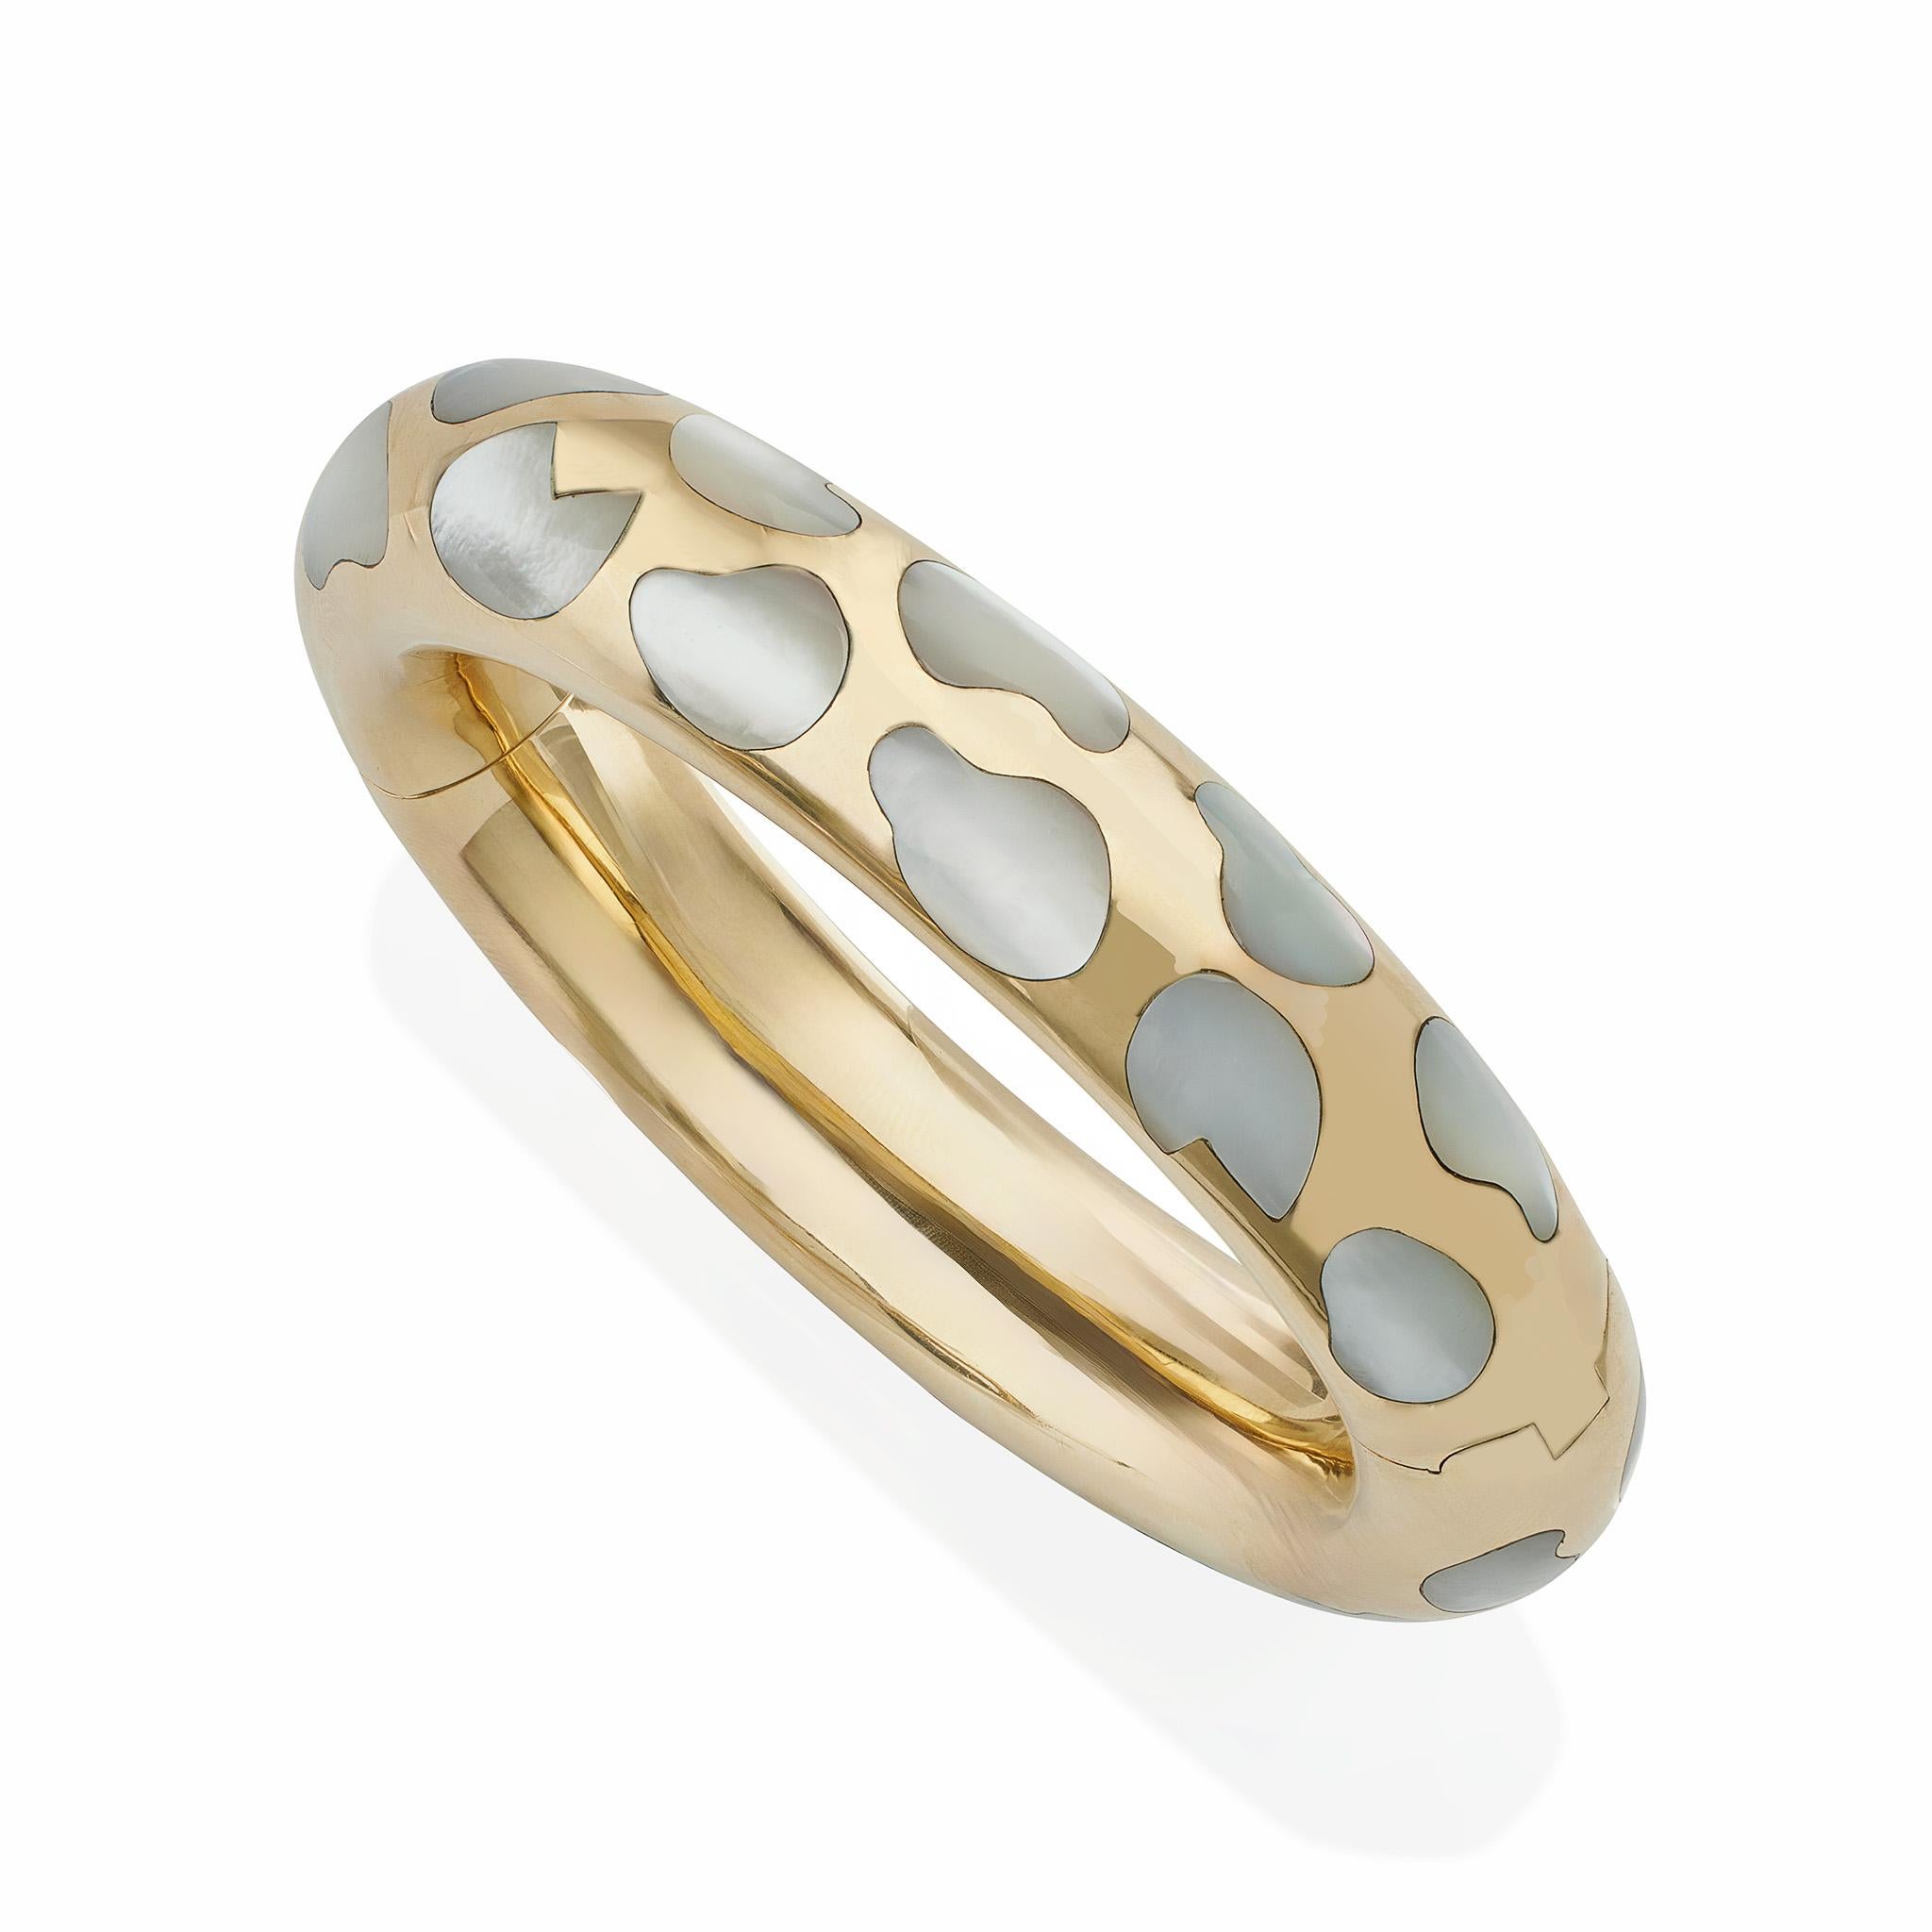 Dieses Armband aus 18 Karat Gold und Perlmutt wurde von Angela Cummings in den 1970er bis 1980er Jahren für Tiffany & Co. entworfen. Der mit Scharnieren versehene Armreif aus poliertem 18-karätigem Gold ist mit unregelmäßigen, an ein Leopardenfell